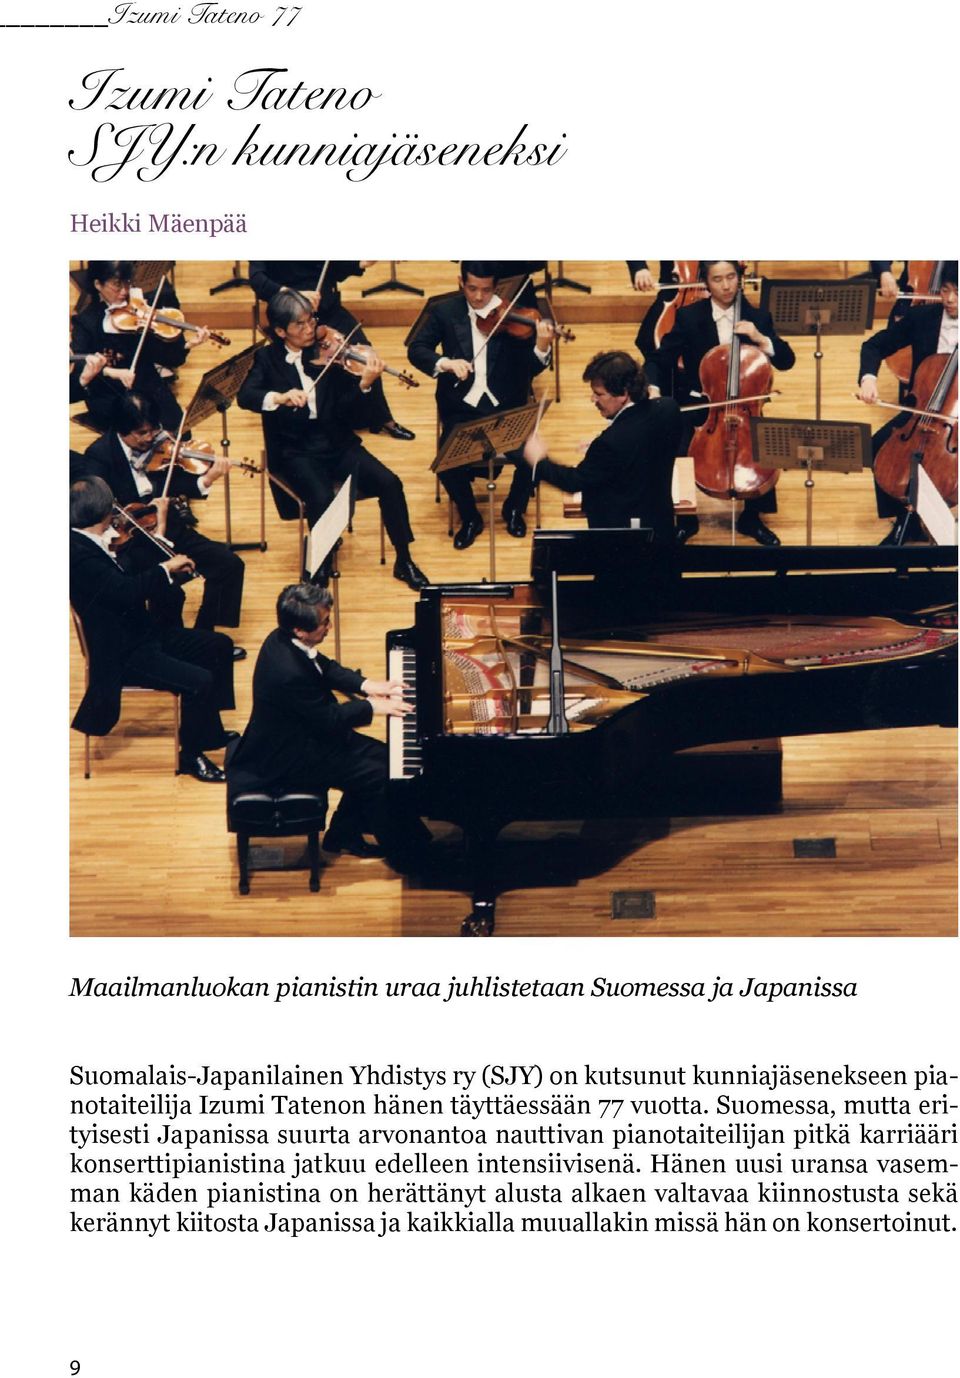 Suomessa, mutta erityisesti Japanissa suurta arvonantoa nauttivan pianotaiteilijan pitkä karriääri konserttipianistina jatkuu edelleen